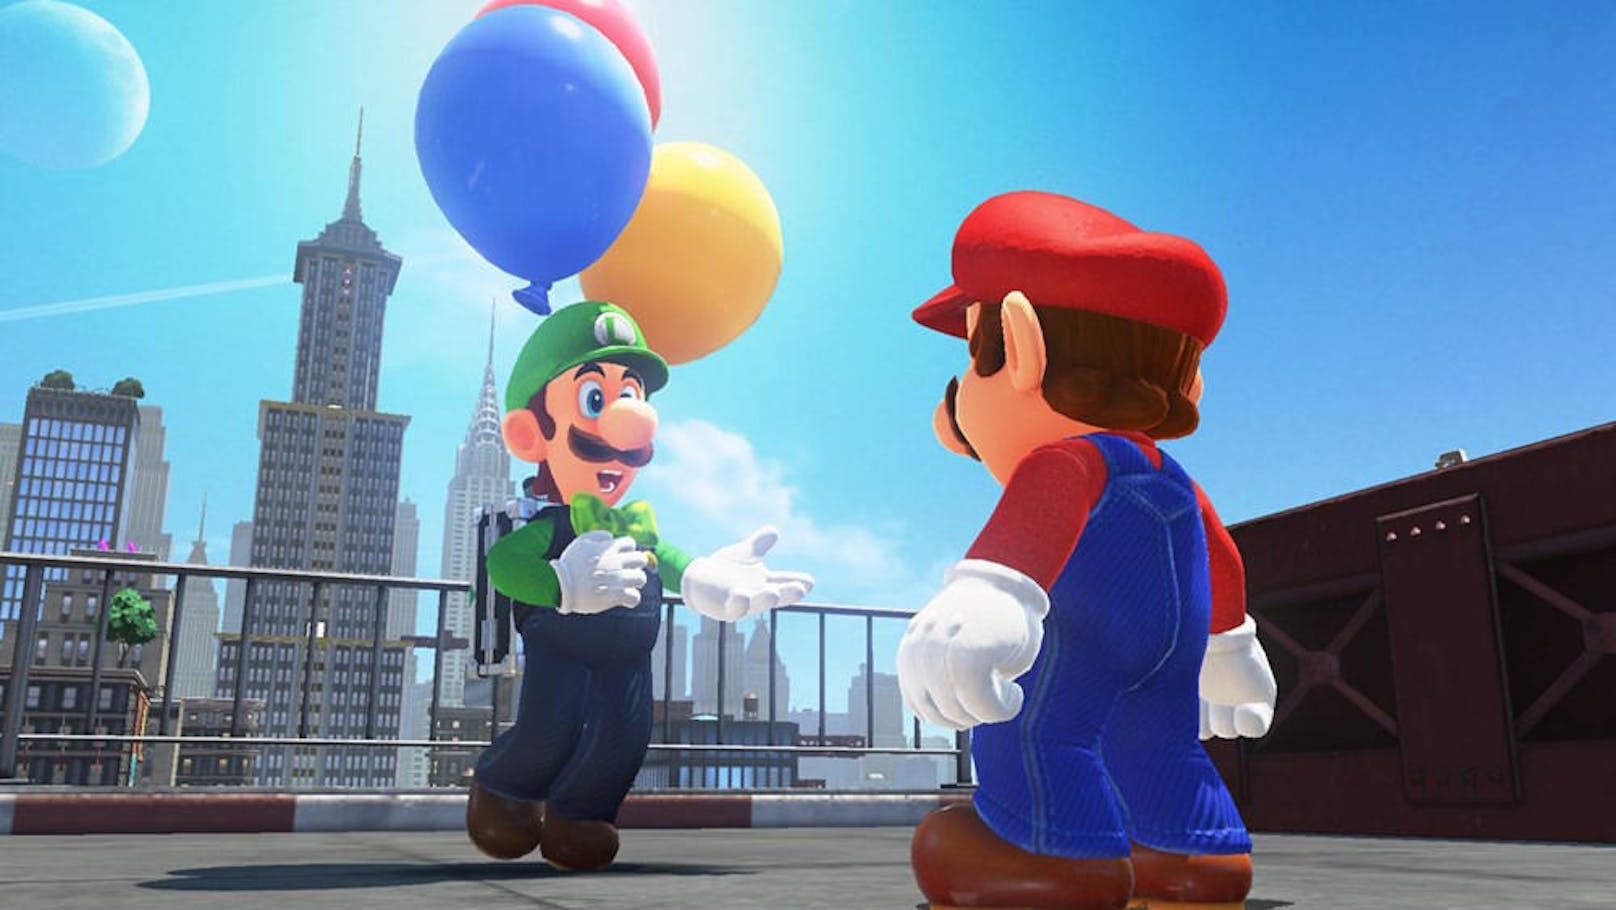 <b>04. Februar 2018:</b> Ein kostenloses Update für Super Mario Odyssey erscheint und die Odyssey geht weiter! Luigi bringt einen lustigen Ballon-Modus ins Spiel. In Luigis Ballonjagd müssen Spieler Ballons entweder vor anderen Spielern finden oder verstecken. Außerdem gibt es neue Outfits und Filter für den Schnappschuss-Modus.